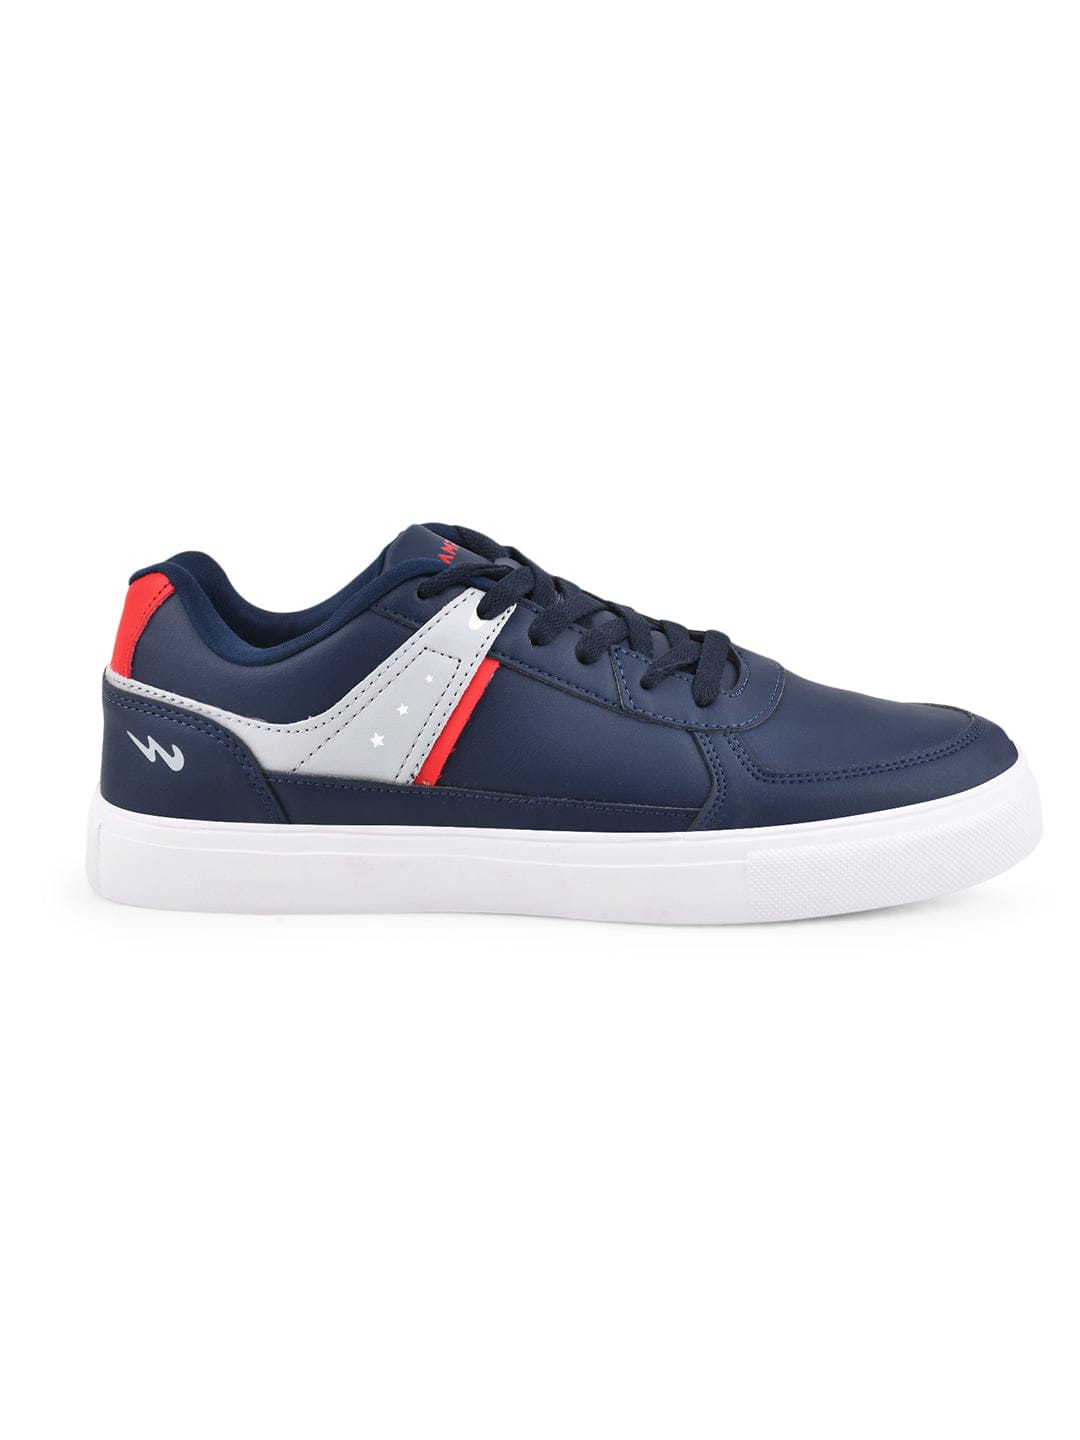 adidas Campus 00s Shoes - Blue | Unisex Skateboarding | adidas US